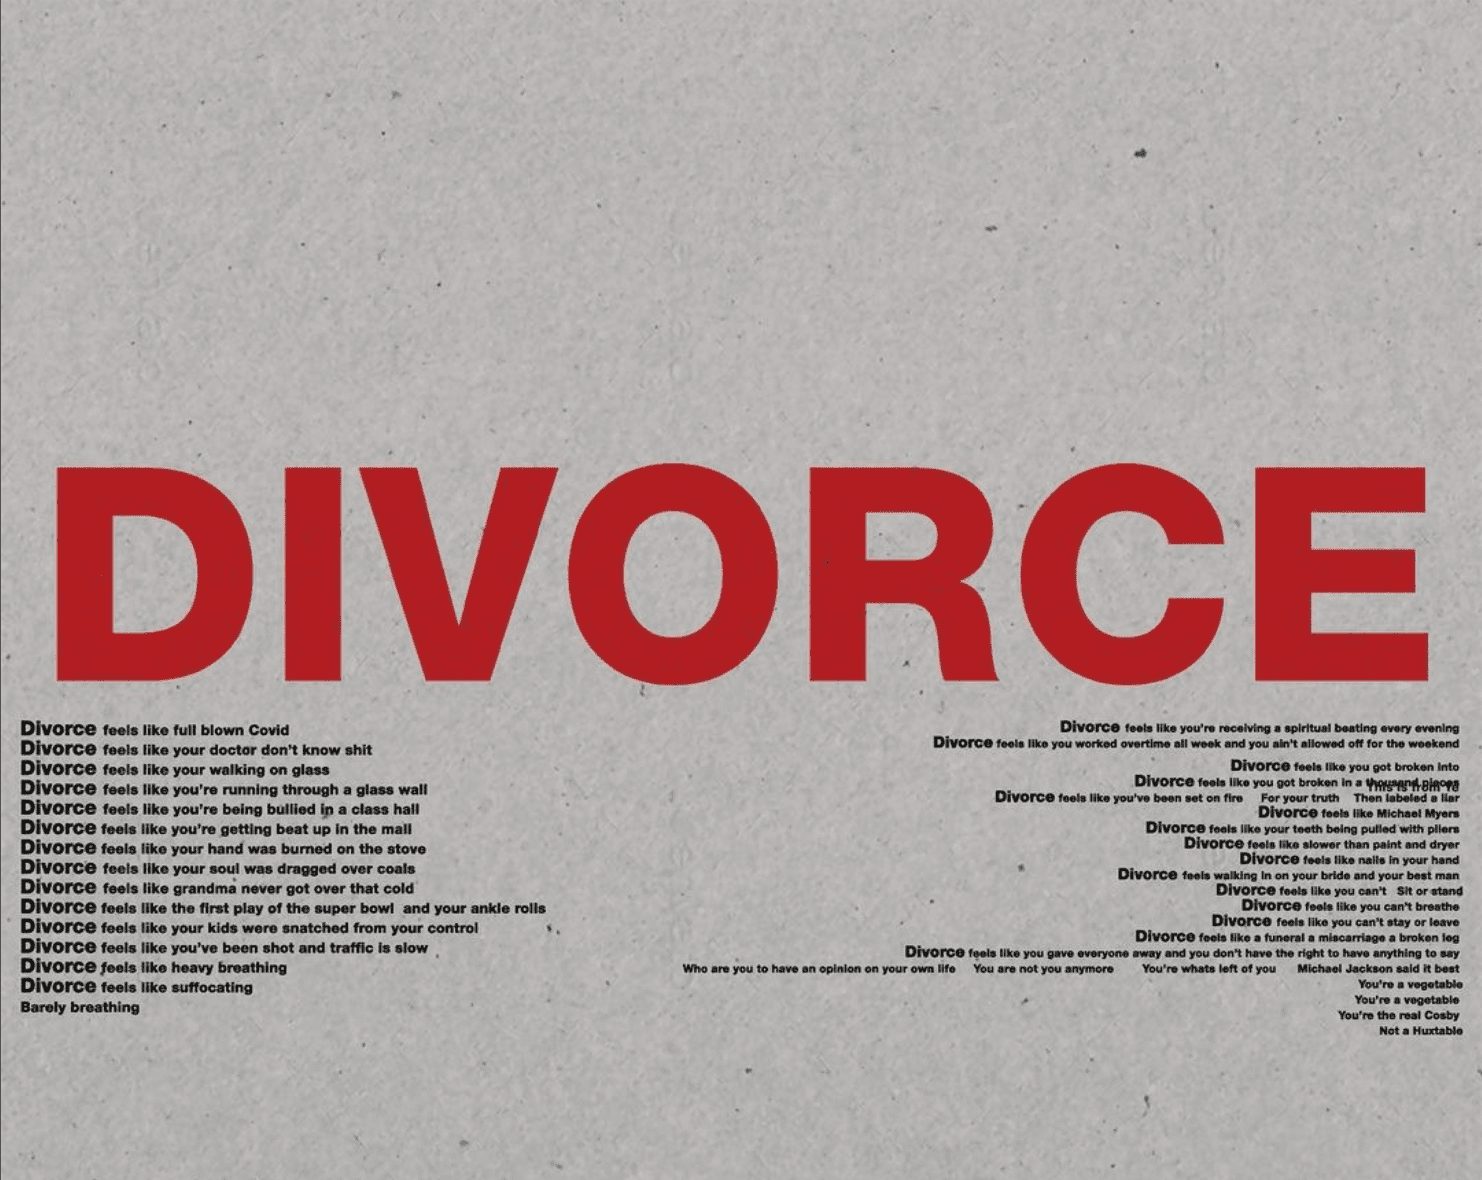 Kanye West's poem, Divorce